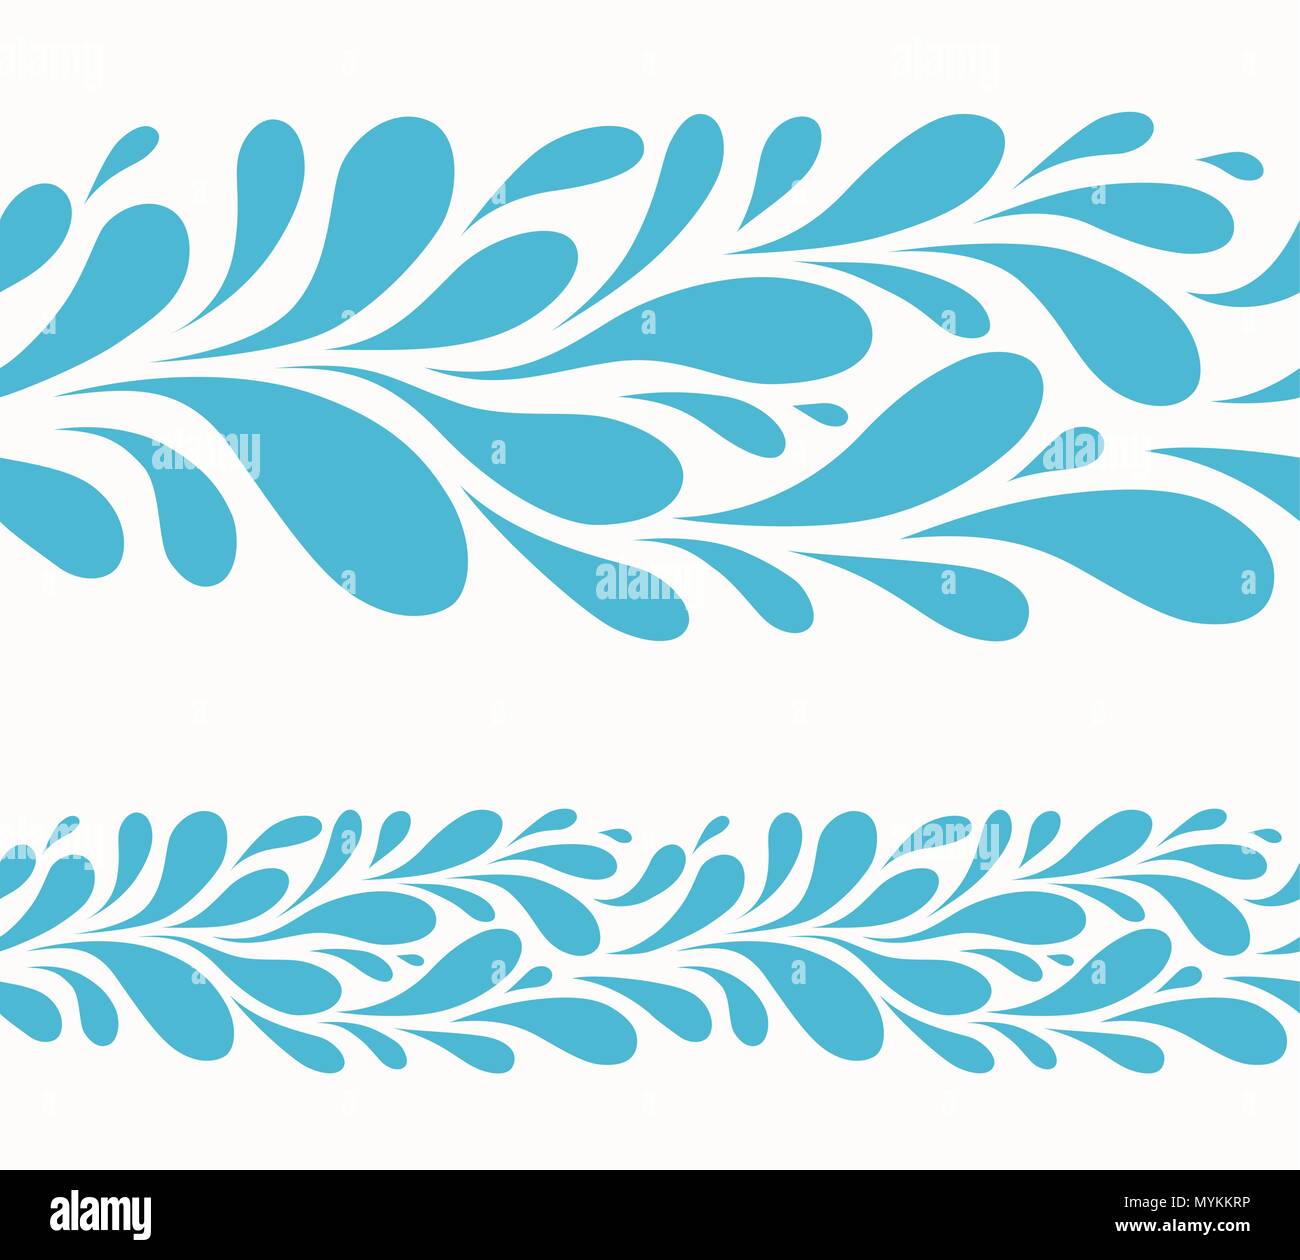 Goutte d'eau sur fond blanc.motif stylisé de gouttes bleu transparent Illustration de Vecteur